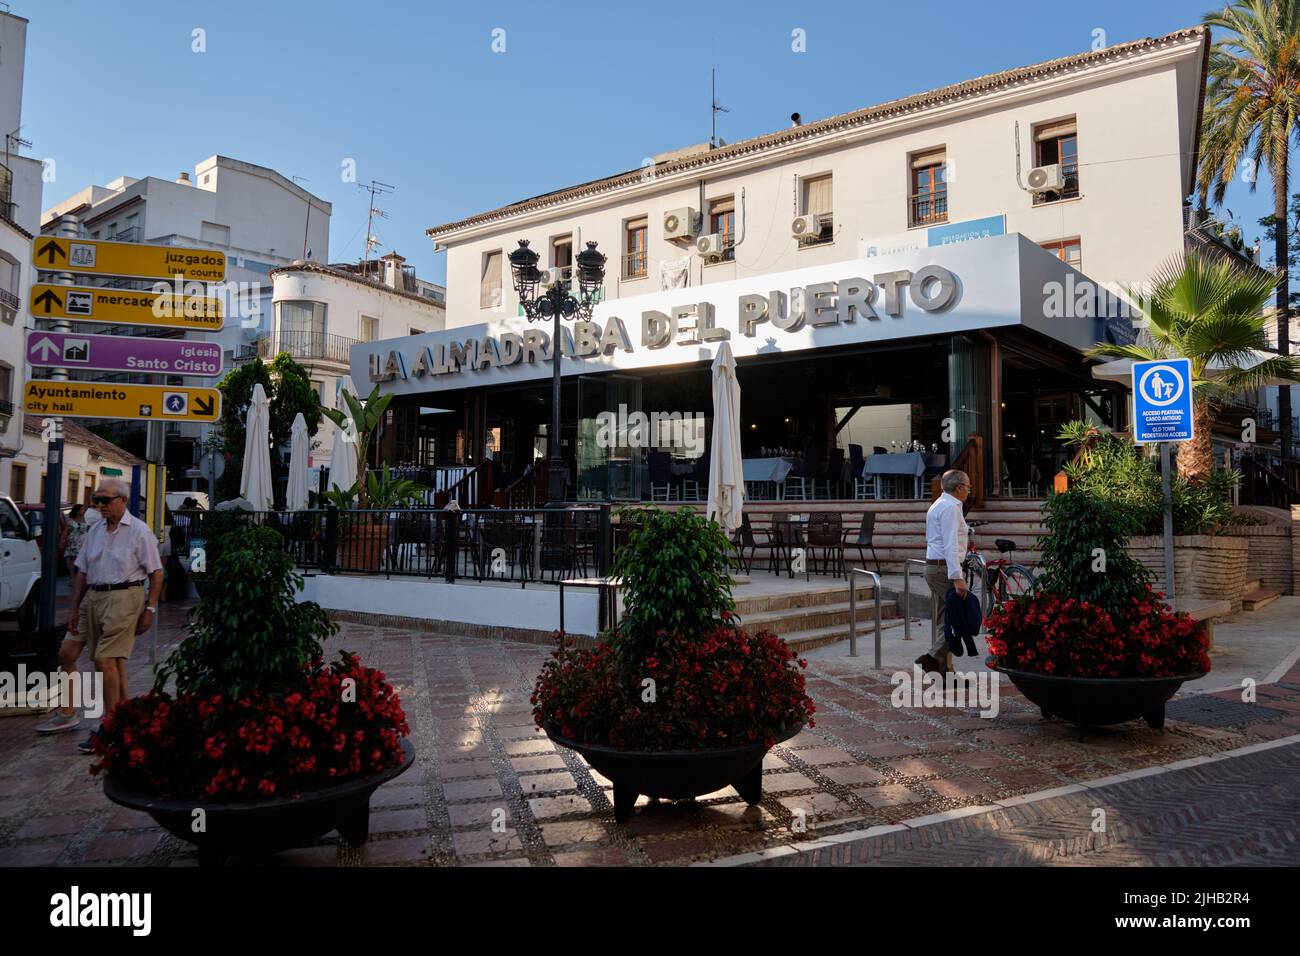 Restaurant La Almadraba del Puerto in Marbella, Spanien. Stockfoto